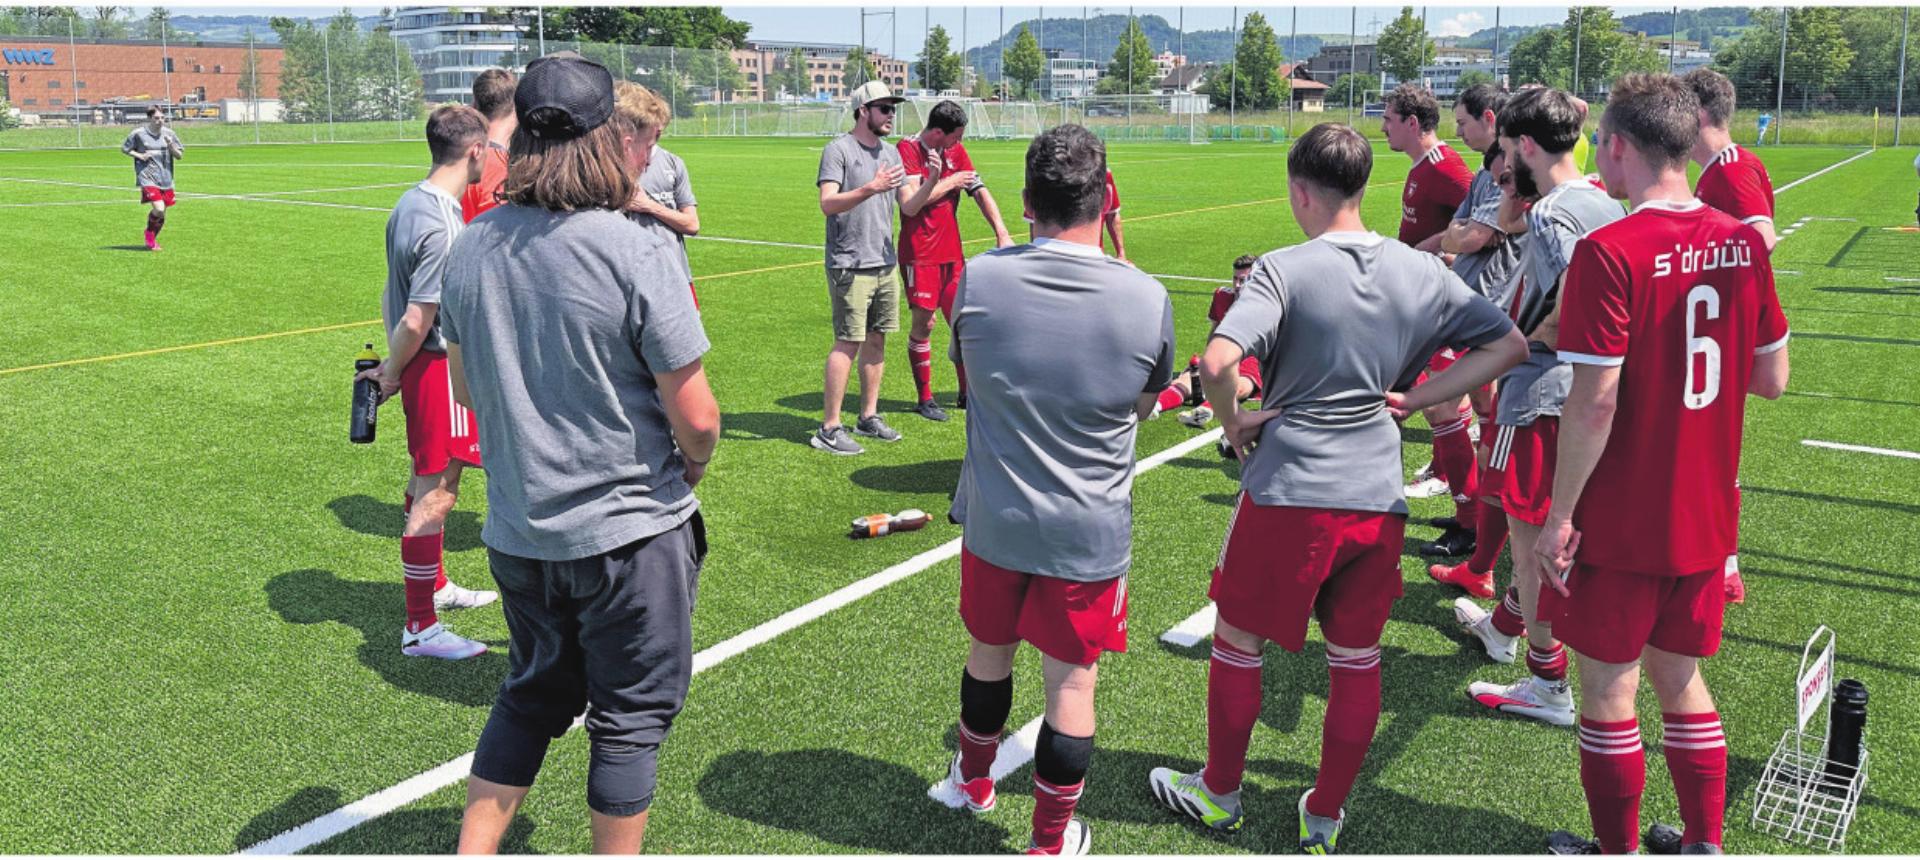 FC Sins Drüü: Gelungene Hauptprobe vor dem Cup-Final